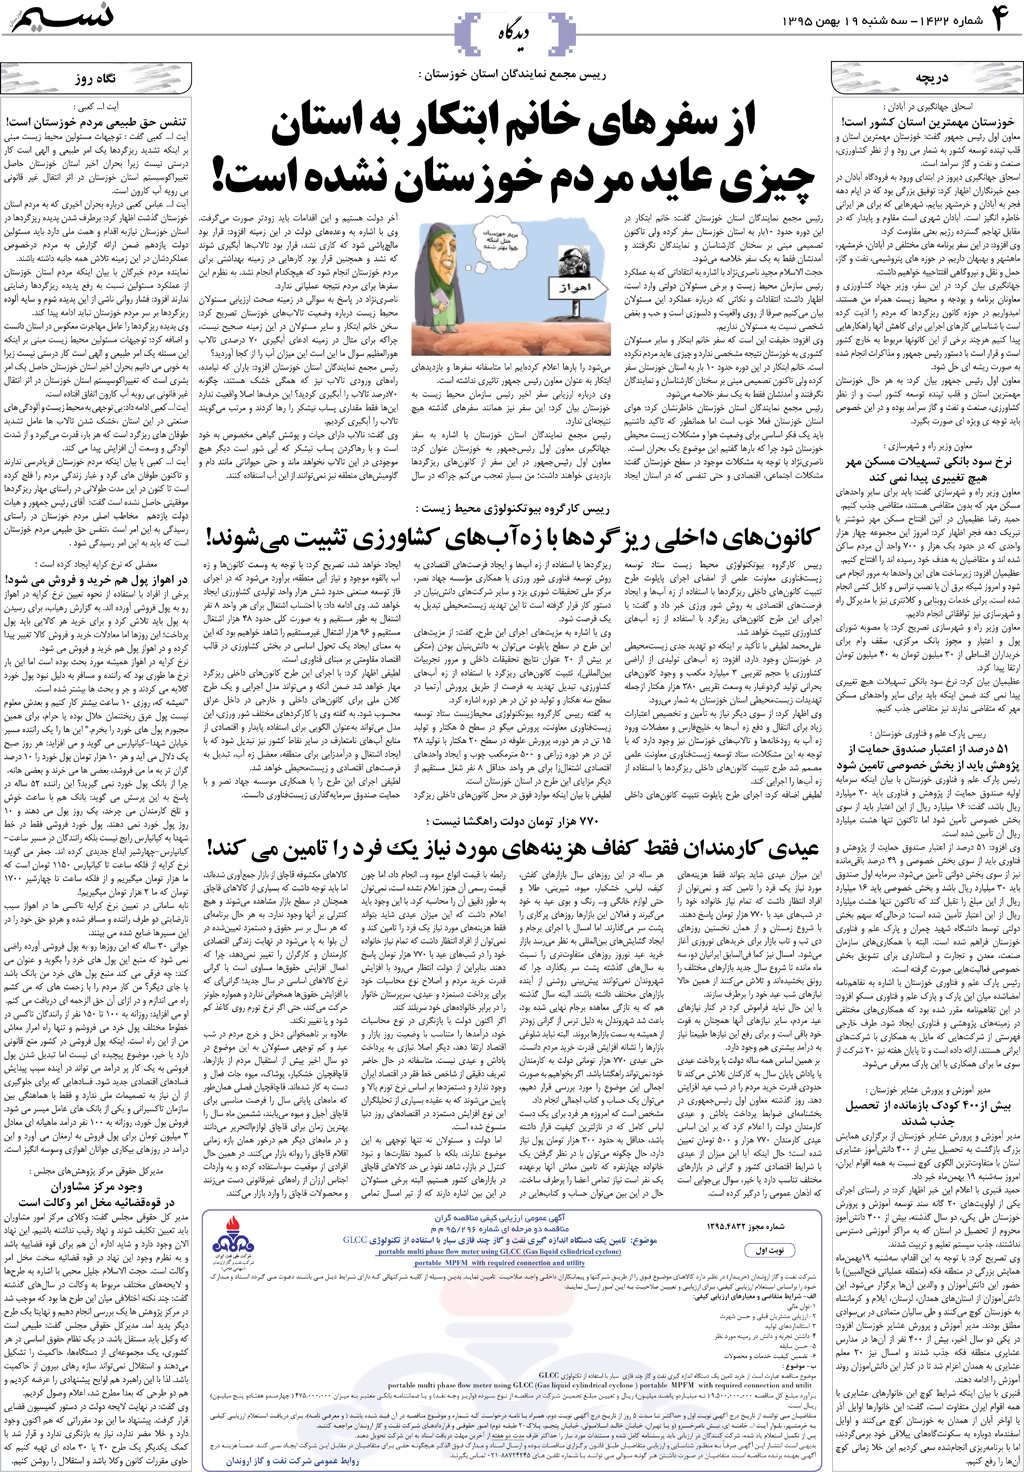 صفحه دیدگاه روزنامه نسیم شماره 1432